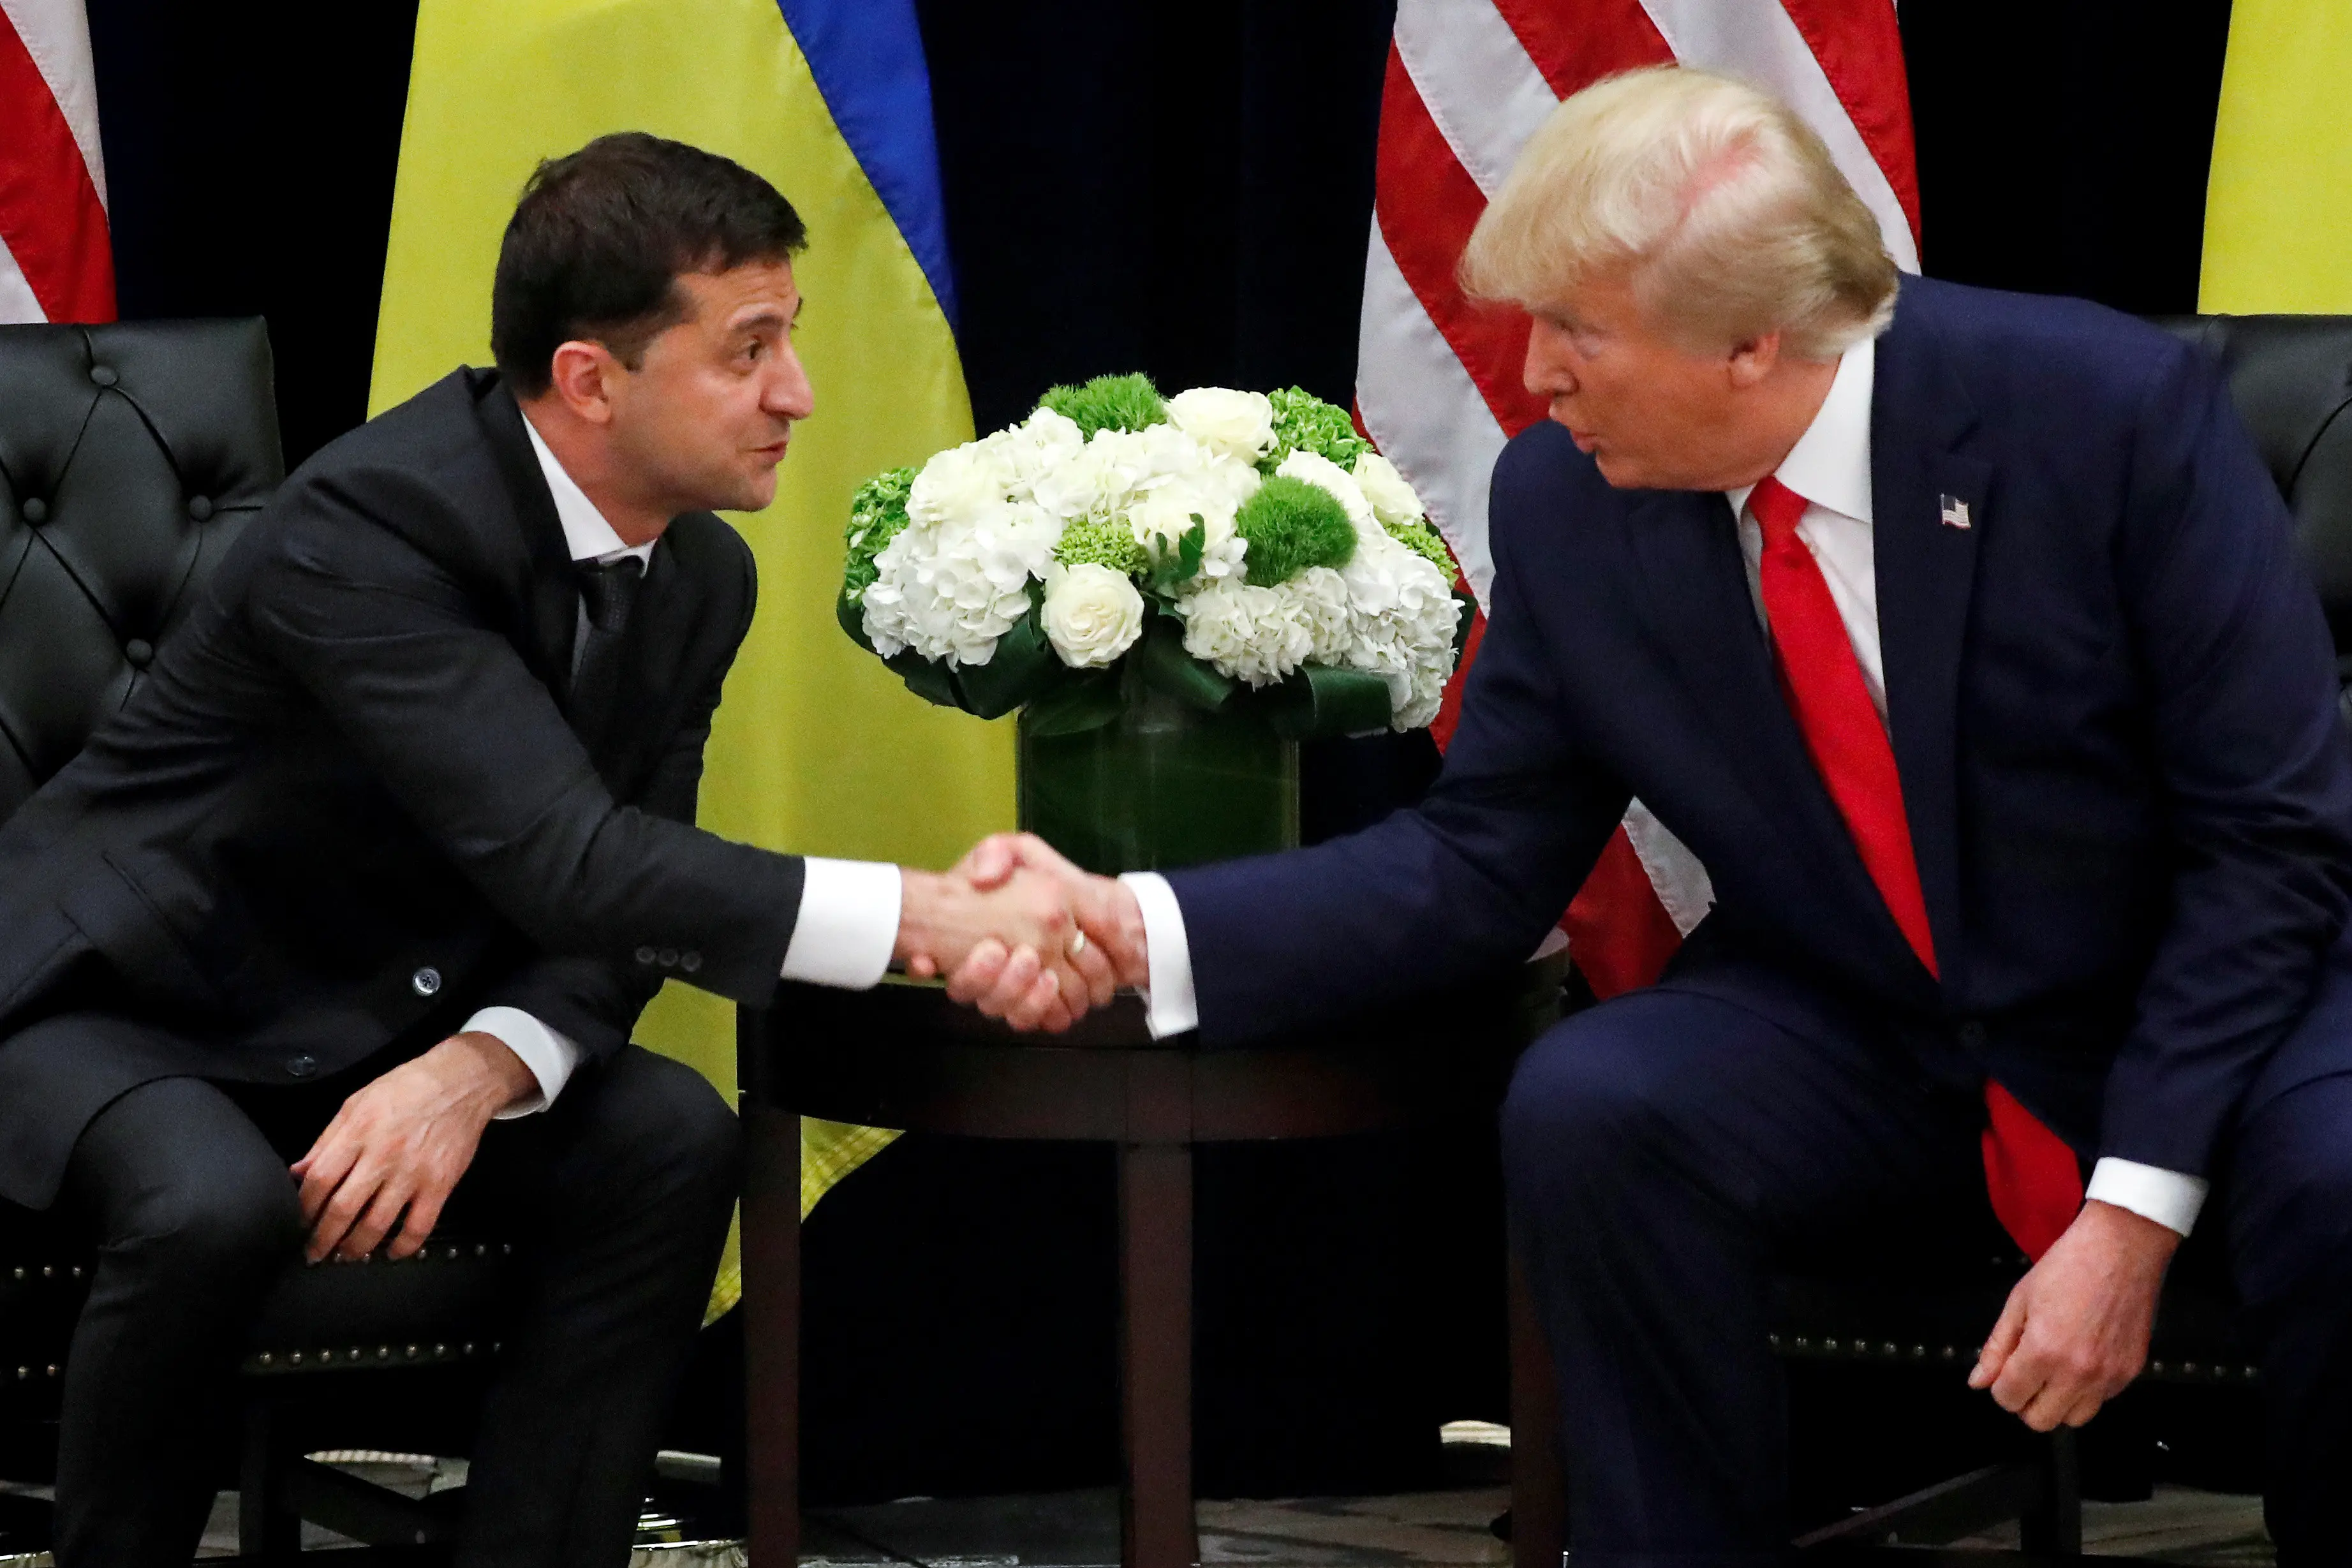 נשיא ארה"ב דונלד טראמפ נפגש עם נשיא אוקראינה וולדימיר זלנסקי בניו יורק, ארה"ב, 25.09.19